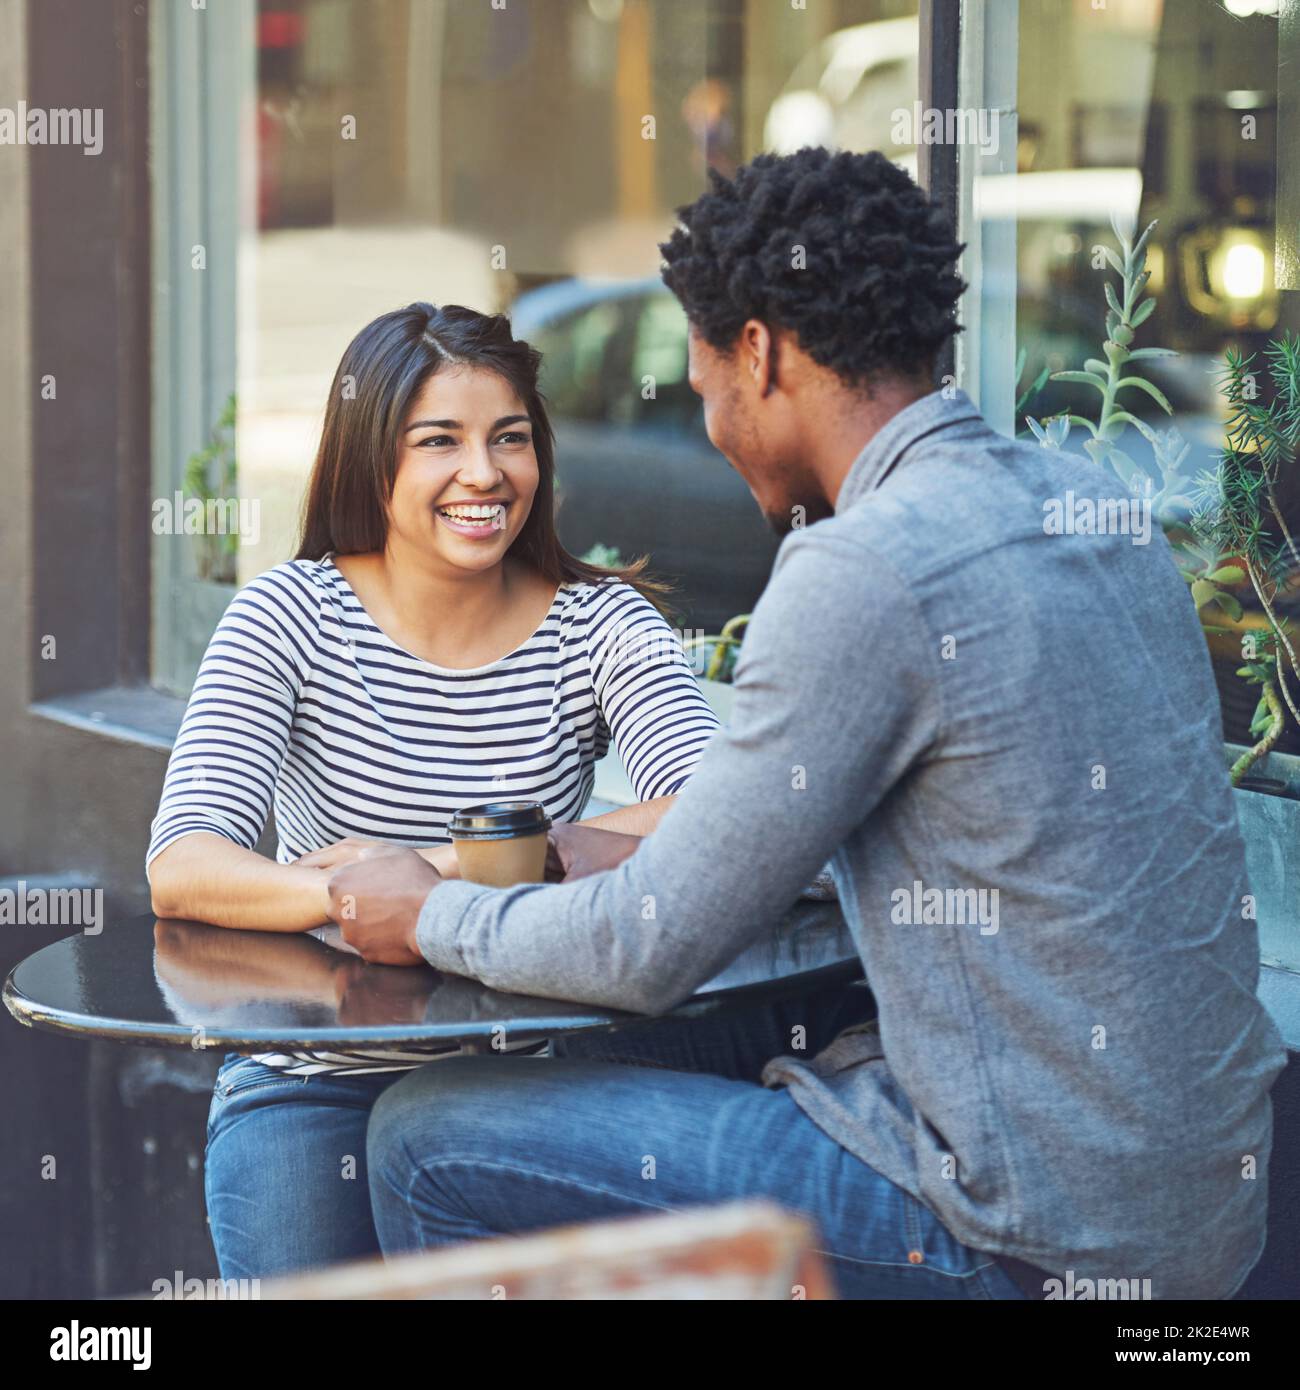 Sie schlagen es ab an ihrem ersten Kaffee Datum. Aufnahme eines jungen Paares bei einem Kaffee-Date in einem Straßencafé. Stockfoto